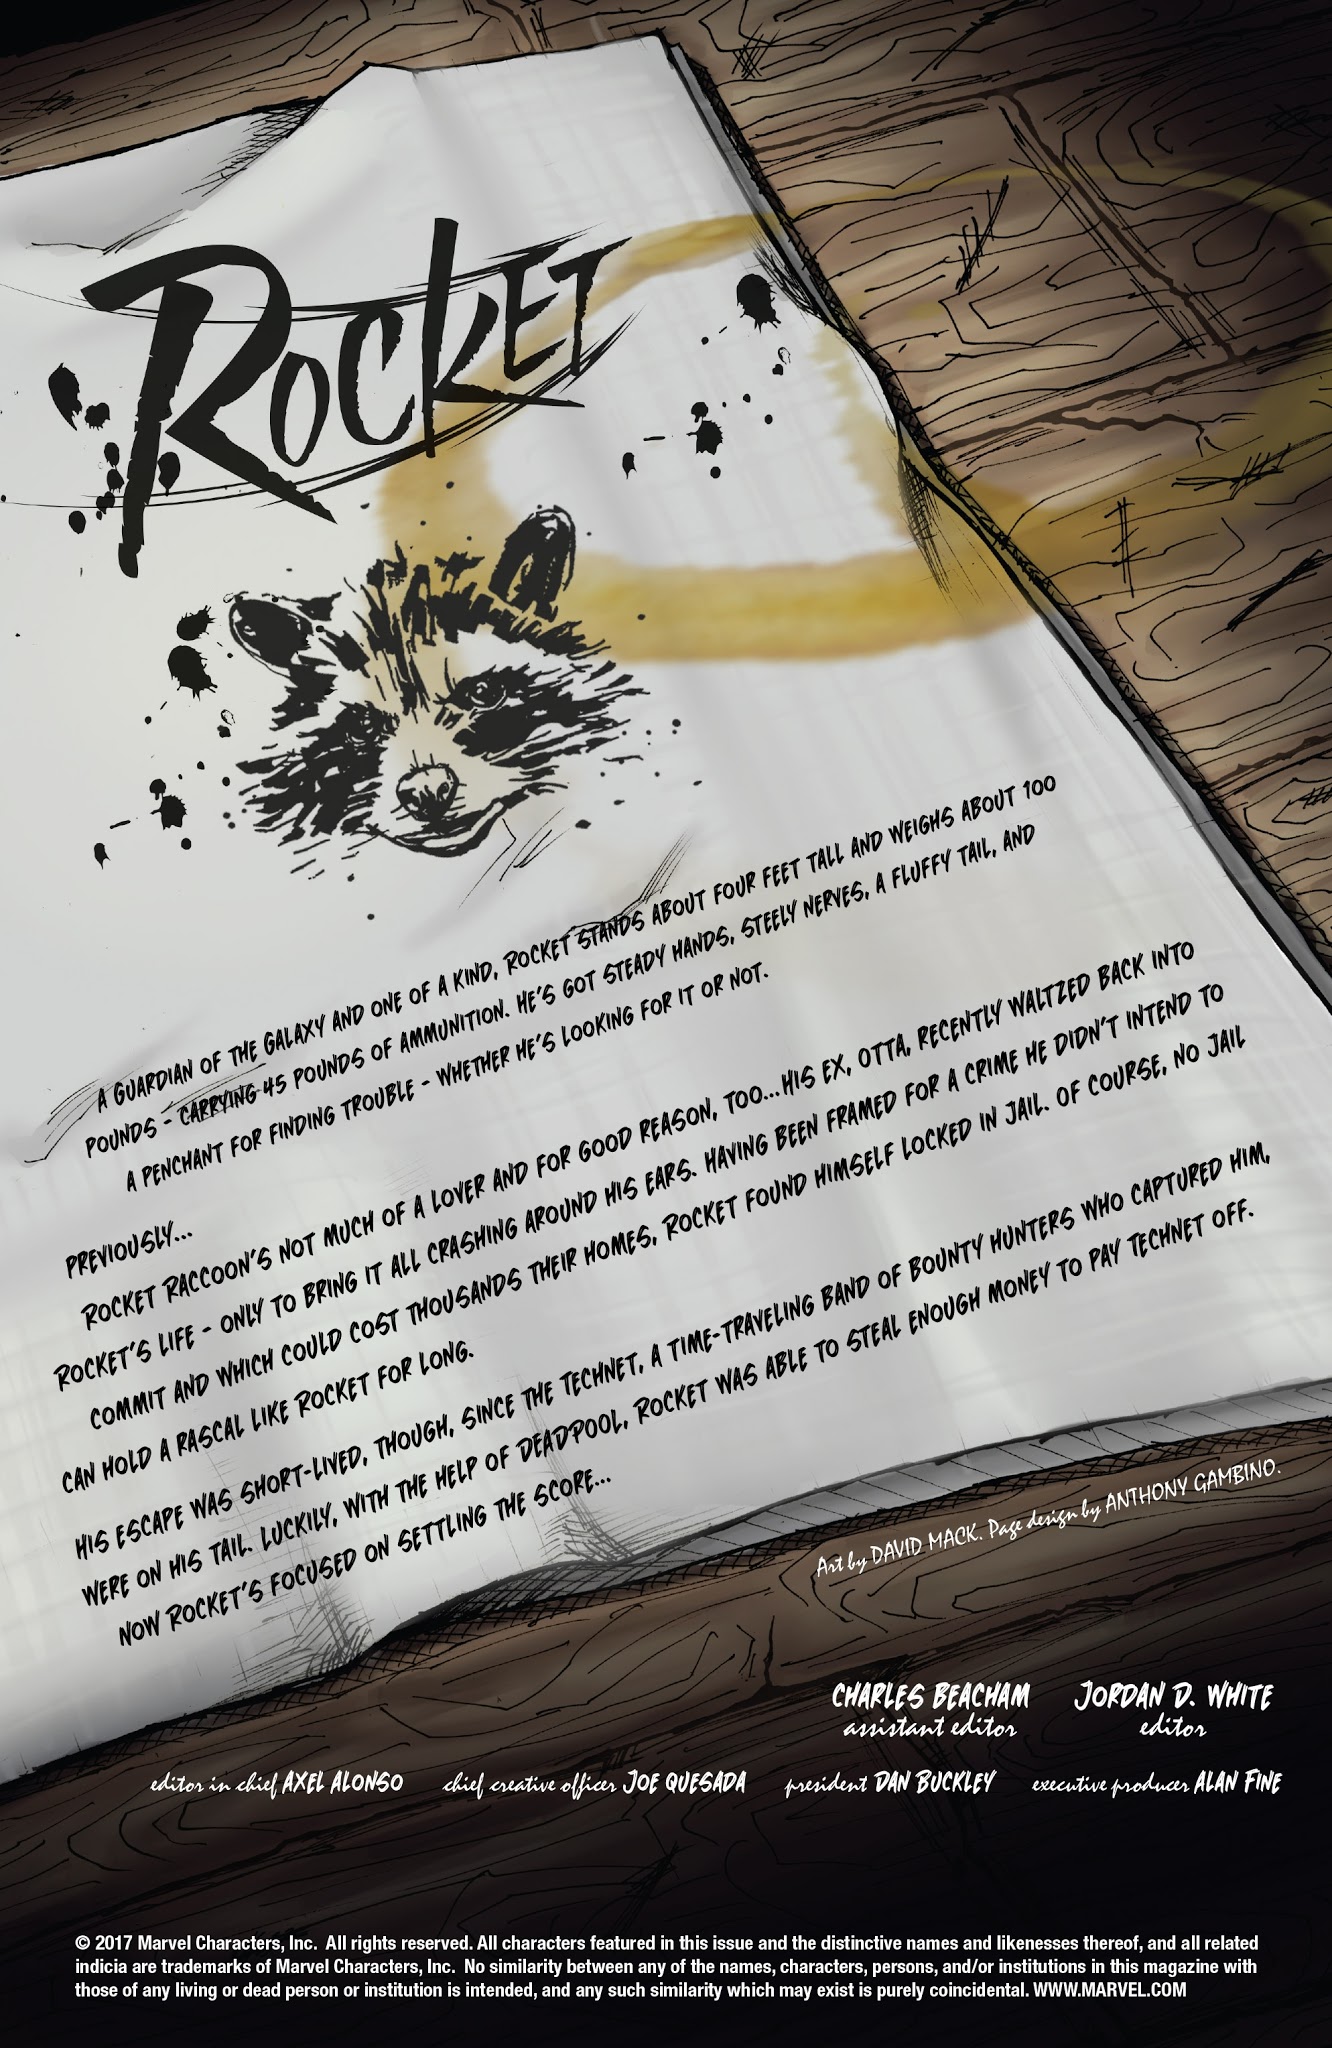 Read online Rocket comic -  Issue #5 - 2